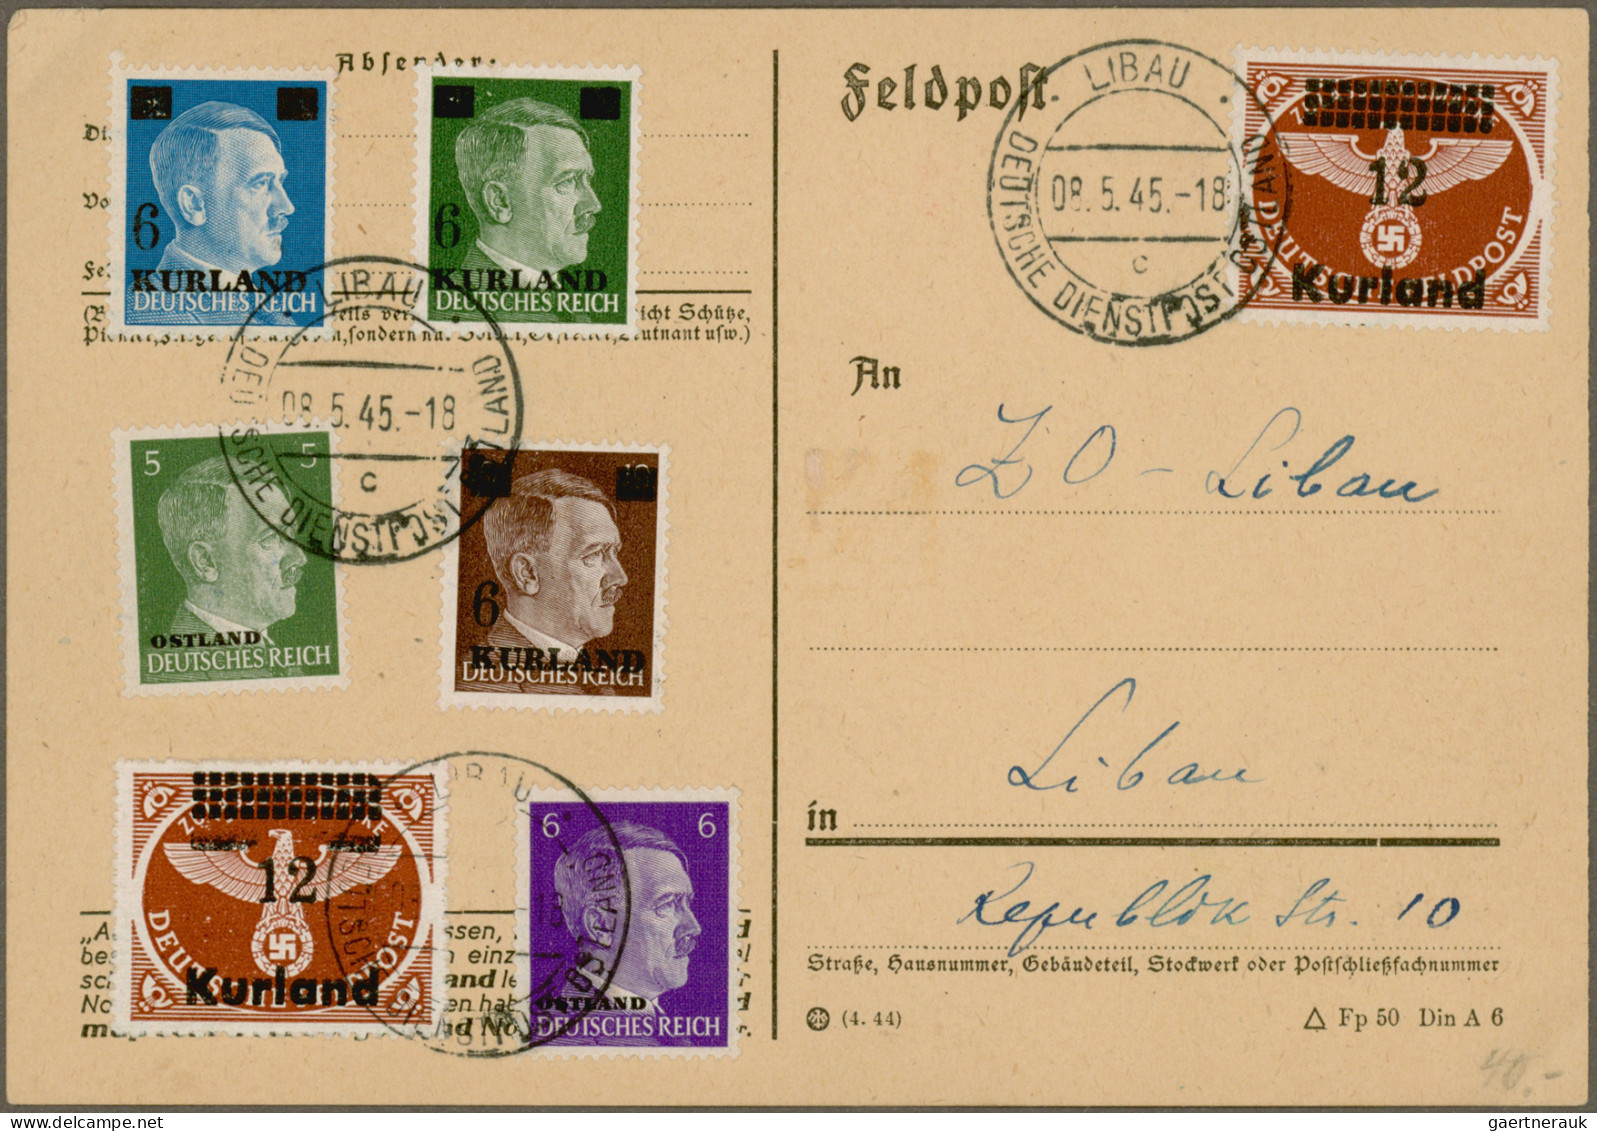 Deutsches Reich: 1900/1945 (ca.), Beachtlicher Posten von über 150 Belegen, dabe